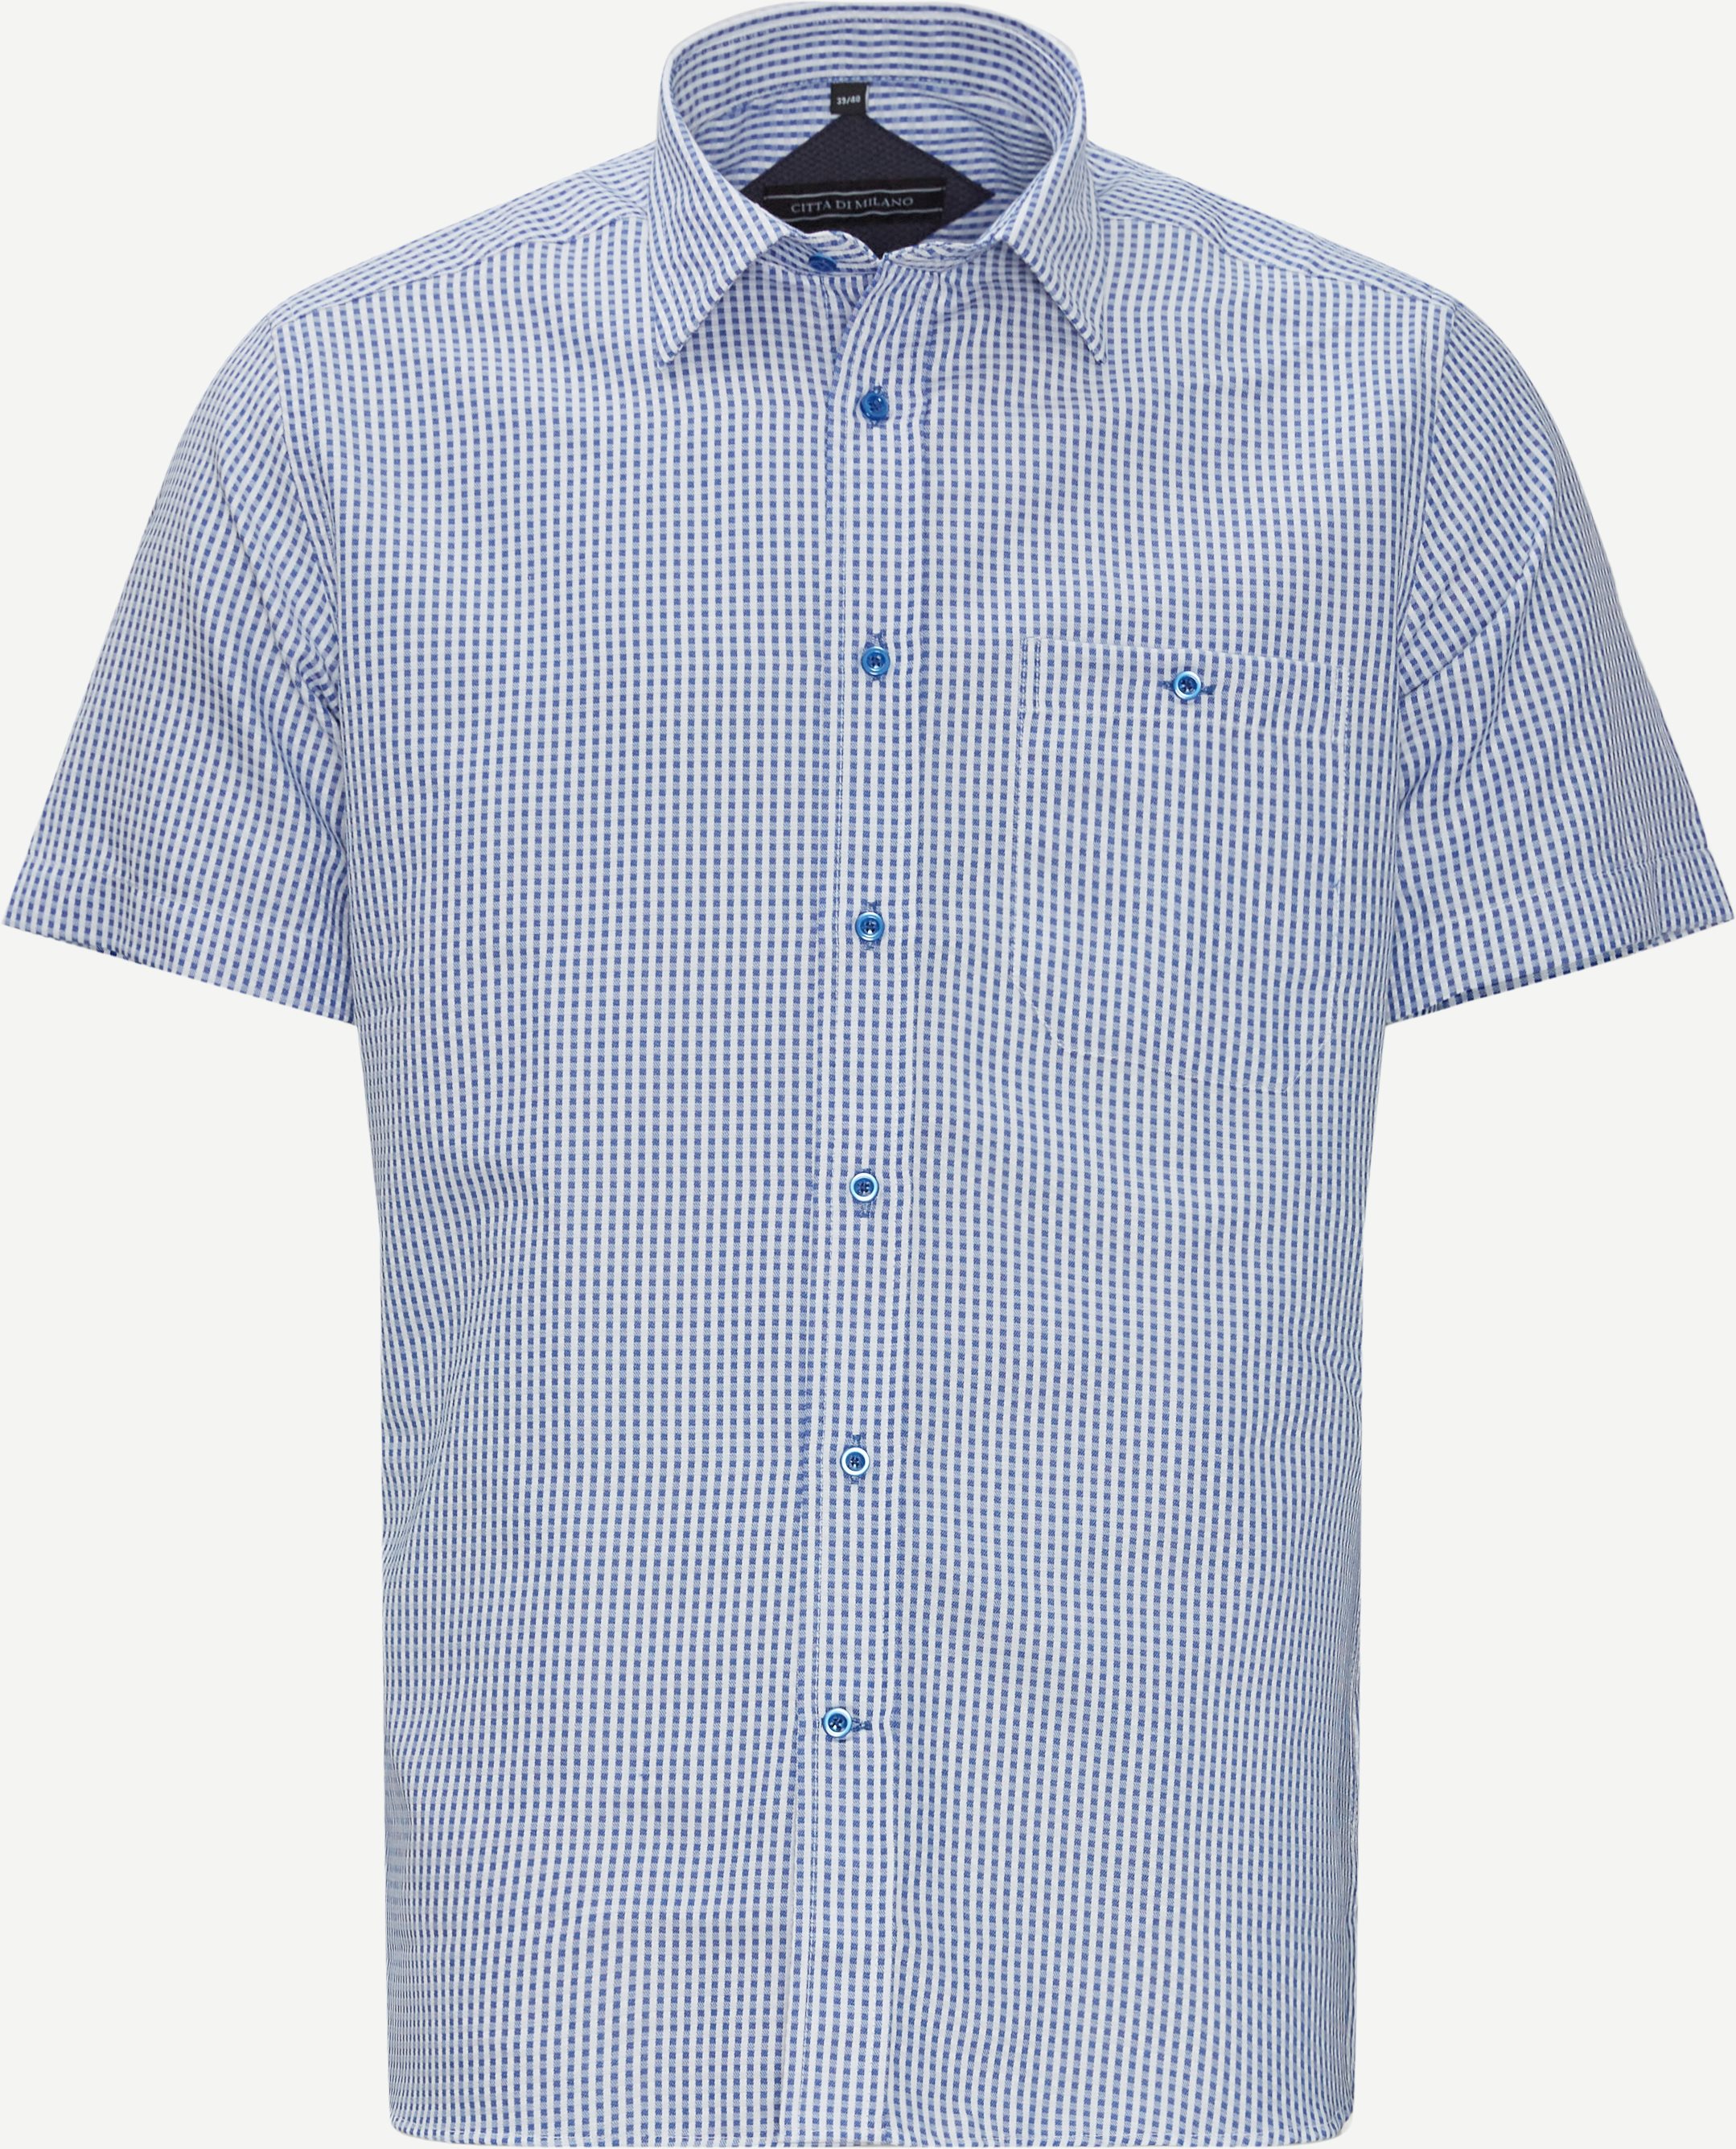 Kortärmade skjortor - Regular fit - Blå